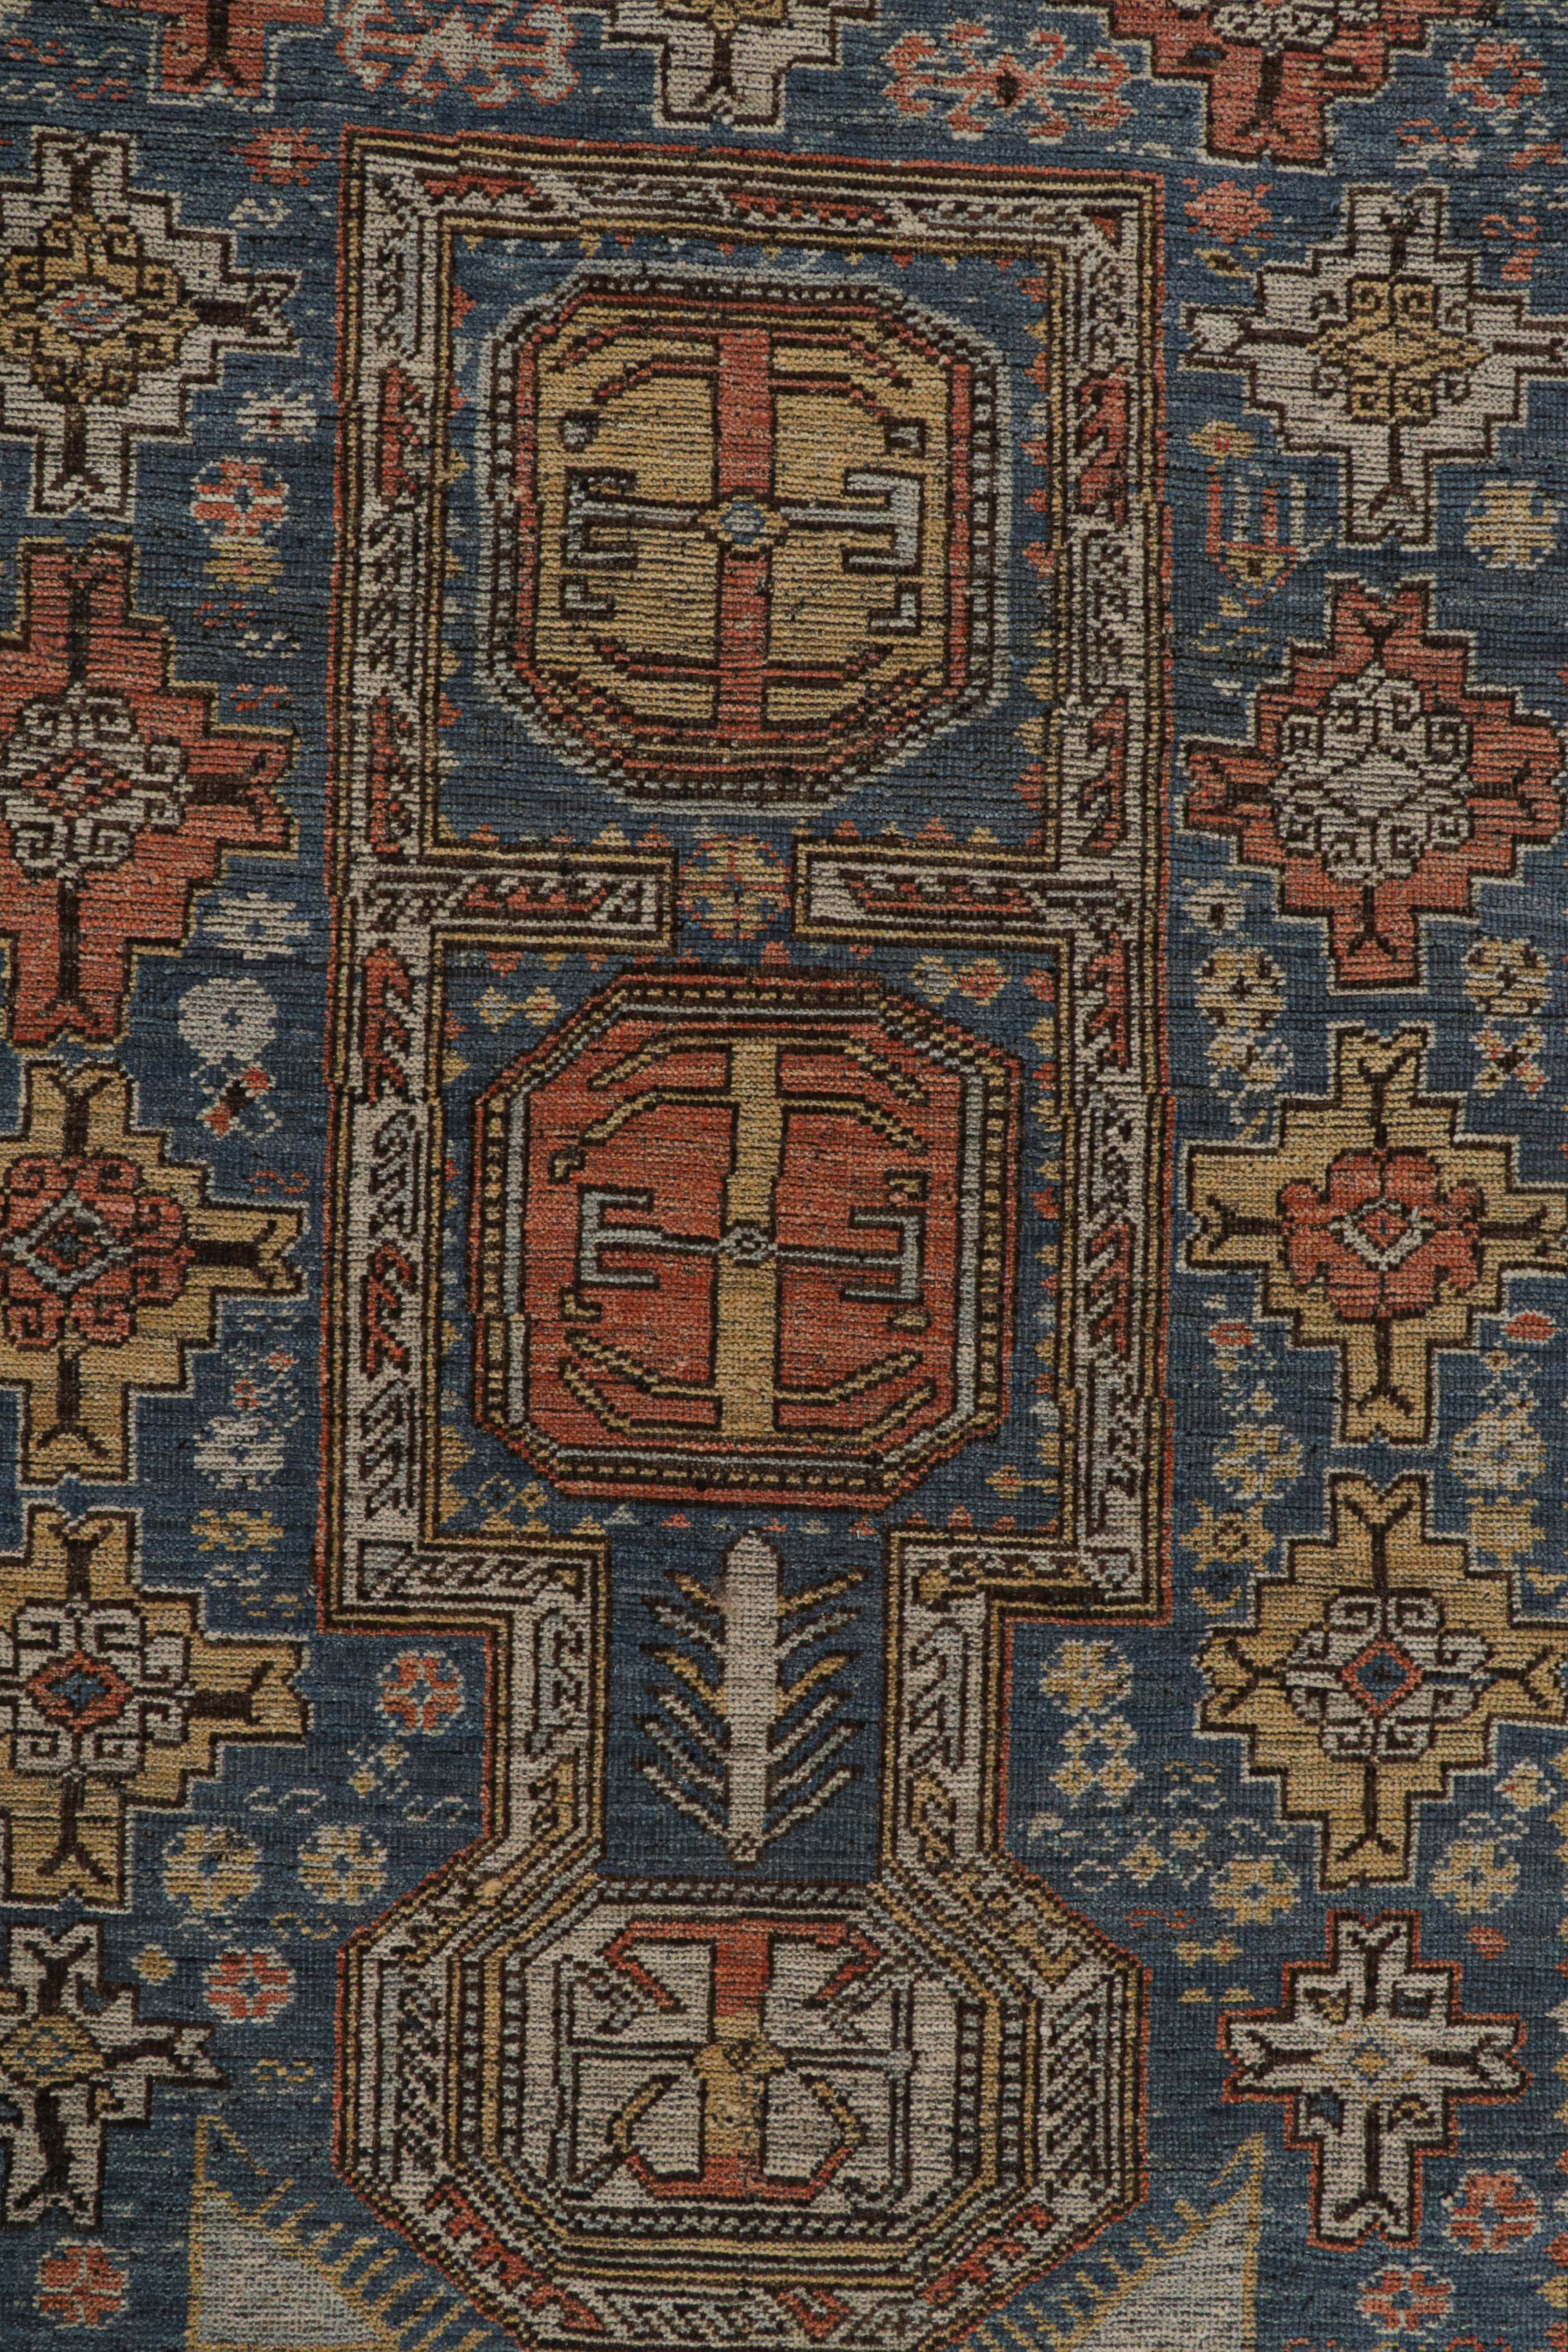 XXIe siècle et contemporain Rug & Kilim's Tribal Style Rug in Blue, with Red and Gold Geometric Patterns (tapis de style tribal en bleu, avec des motifs géométriques rouges et dorés) en vente